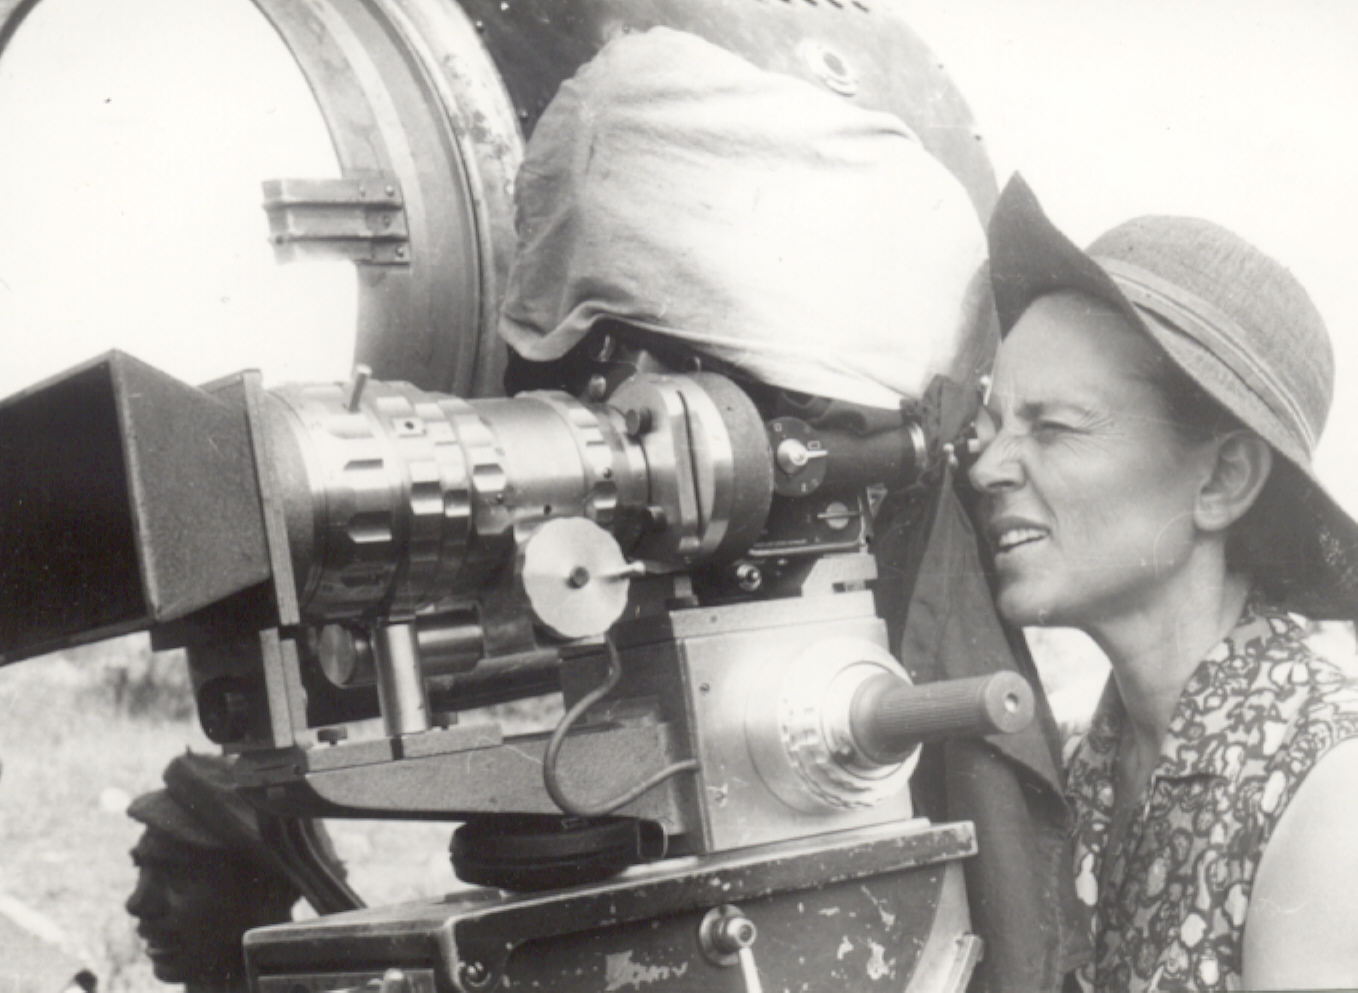 Film director Binka Zhelyazkova at work, 1967